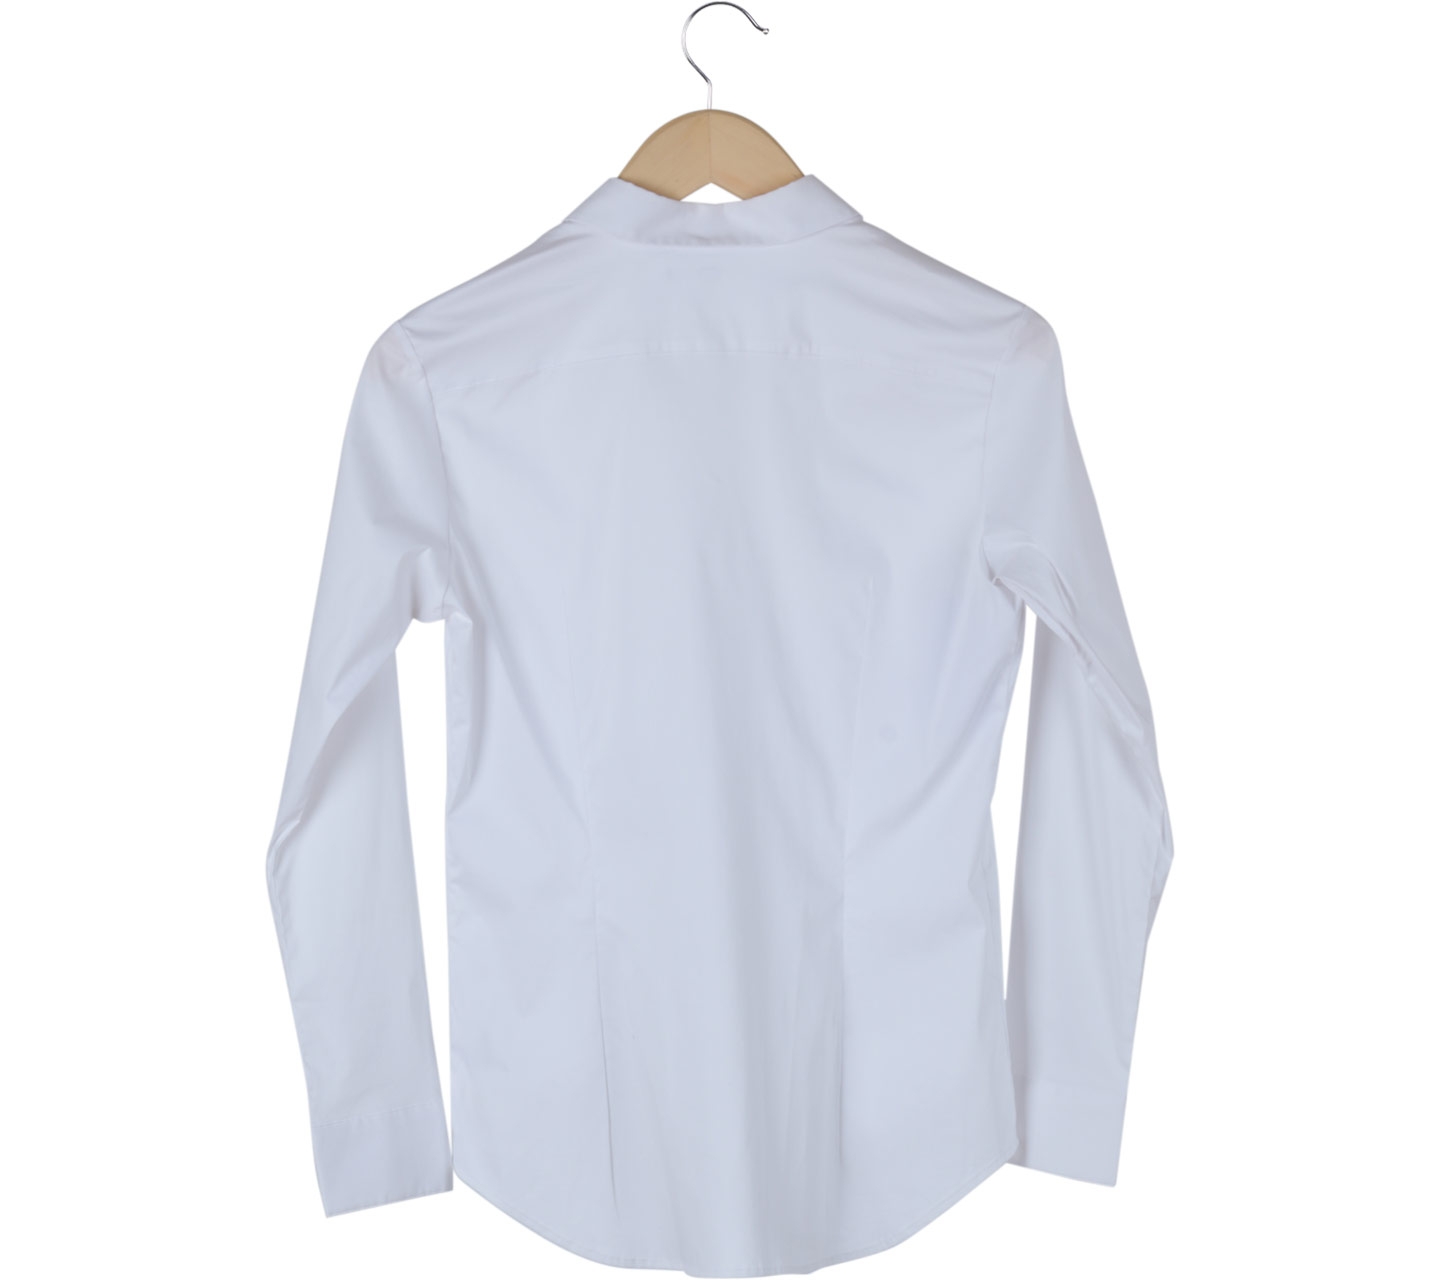 UNIQLO White Basic Shirt